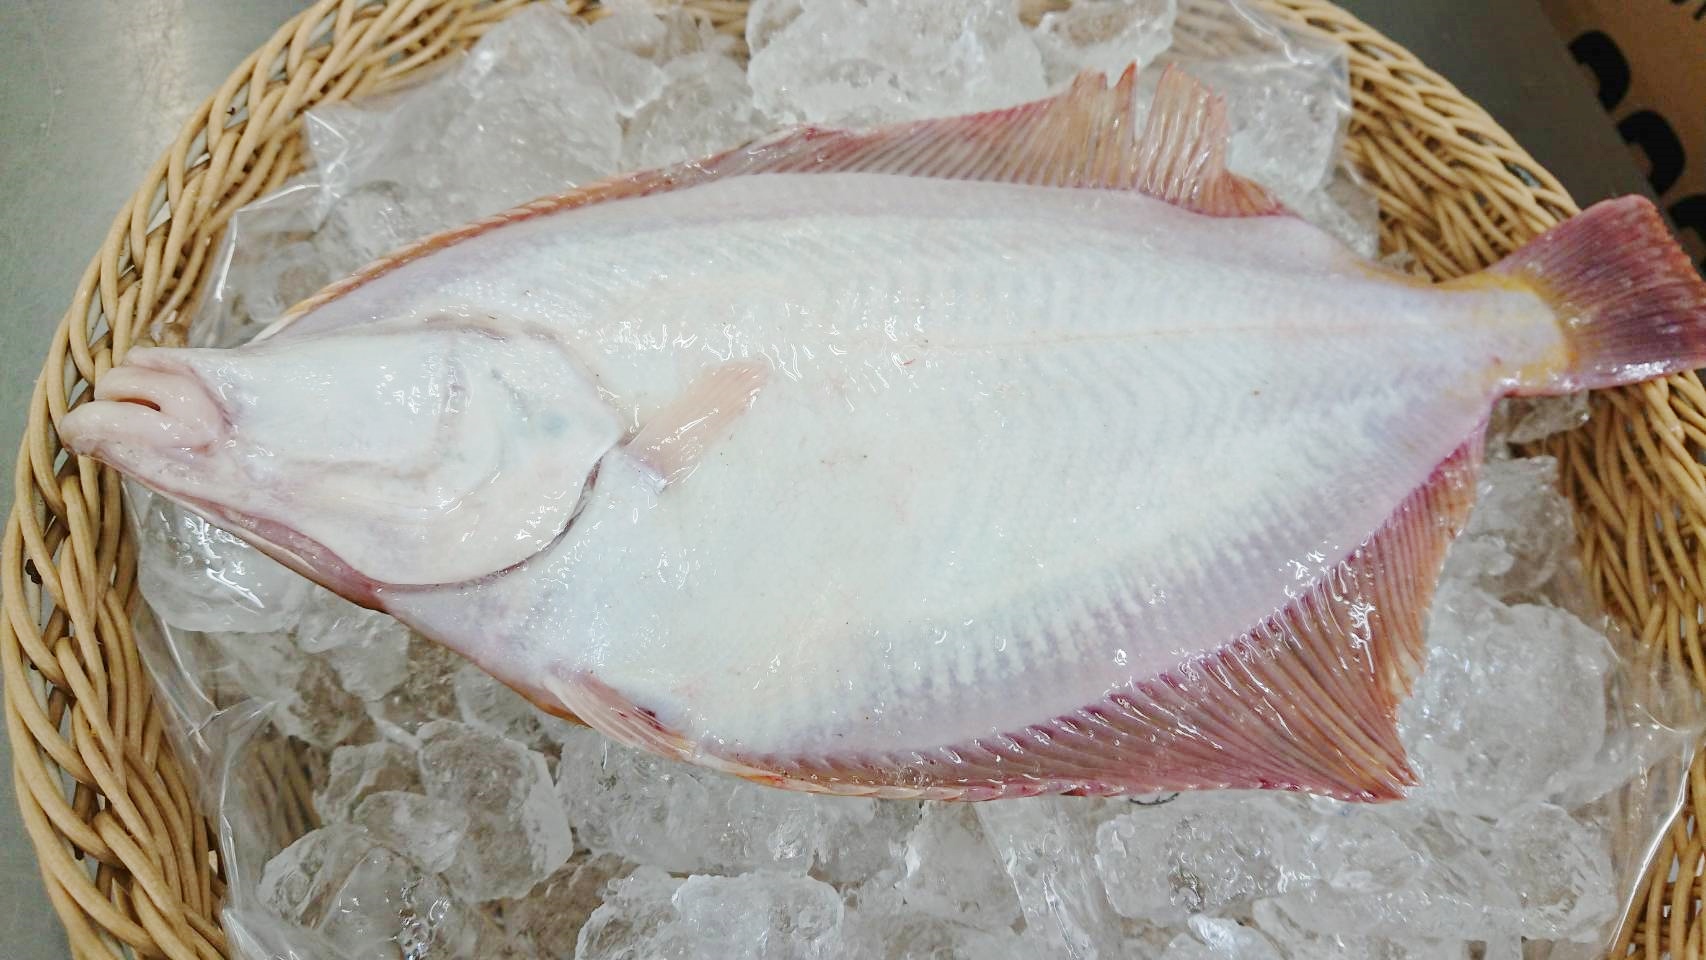 04 15 本日の水揚 カレイの種類について 相馬双葉漁業協同組合